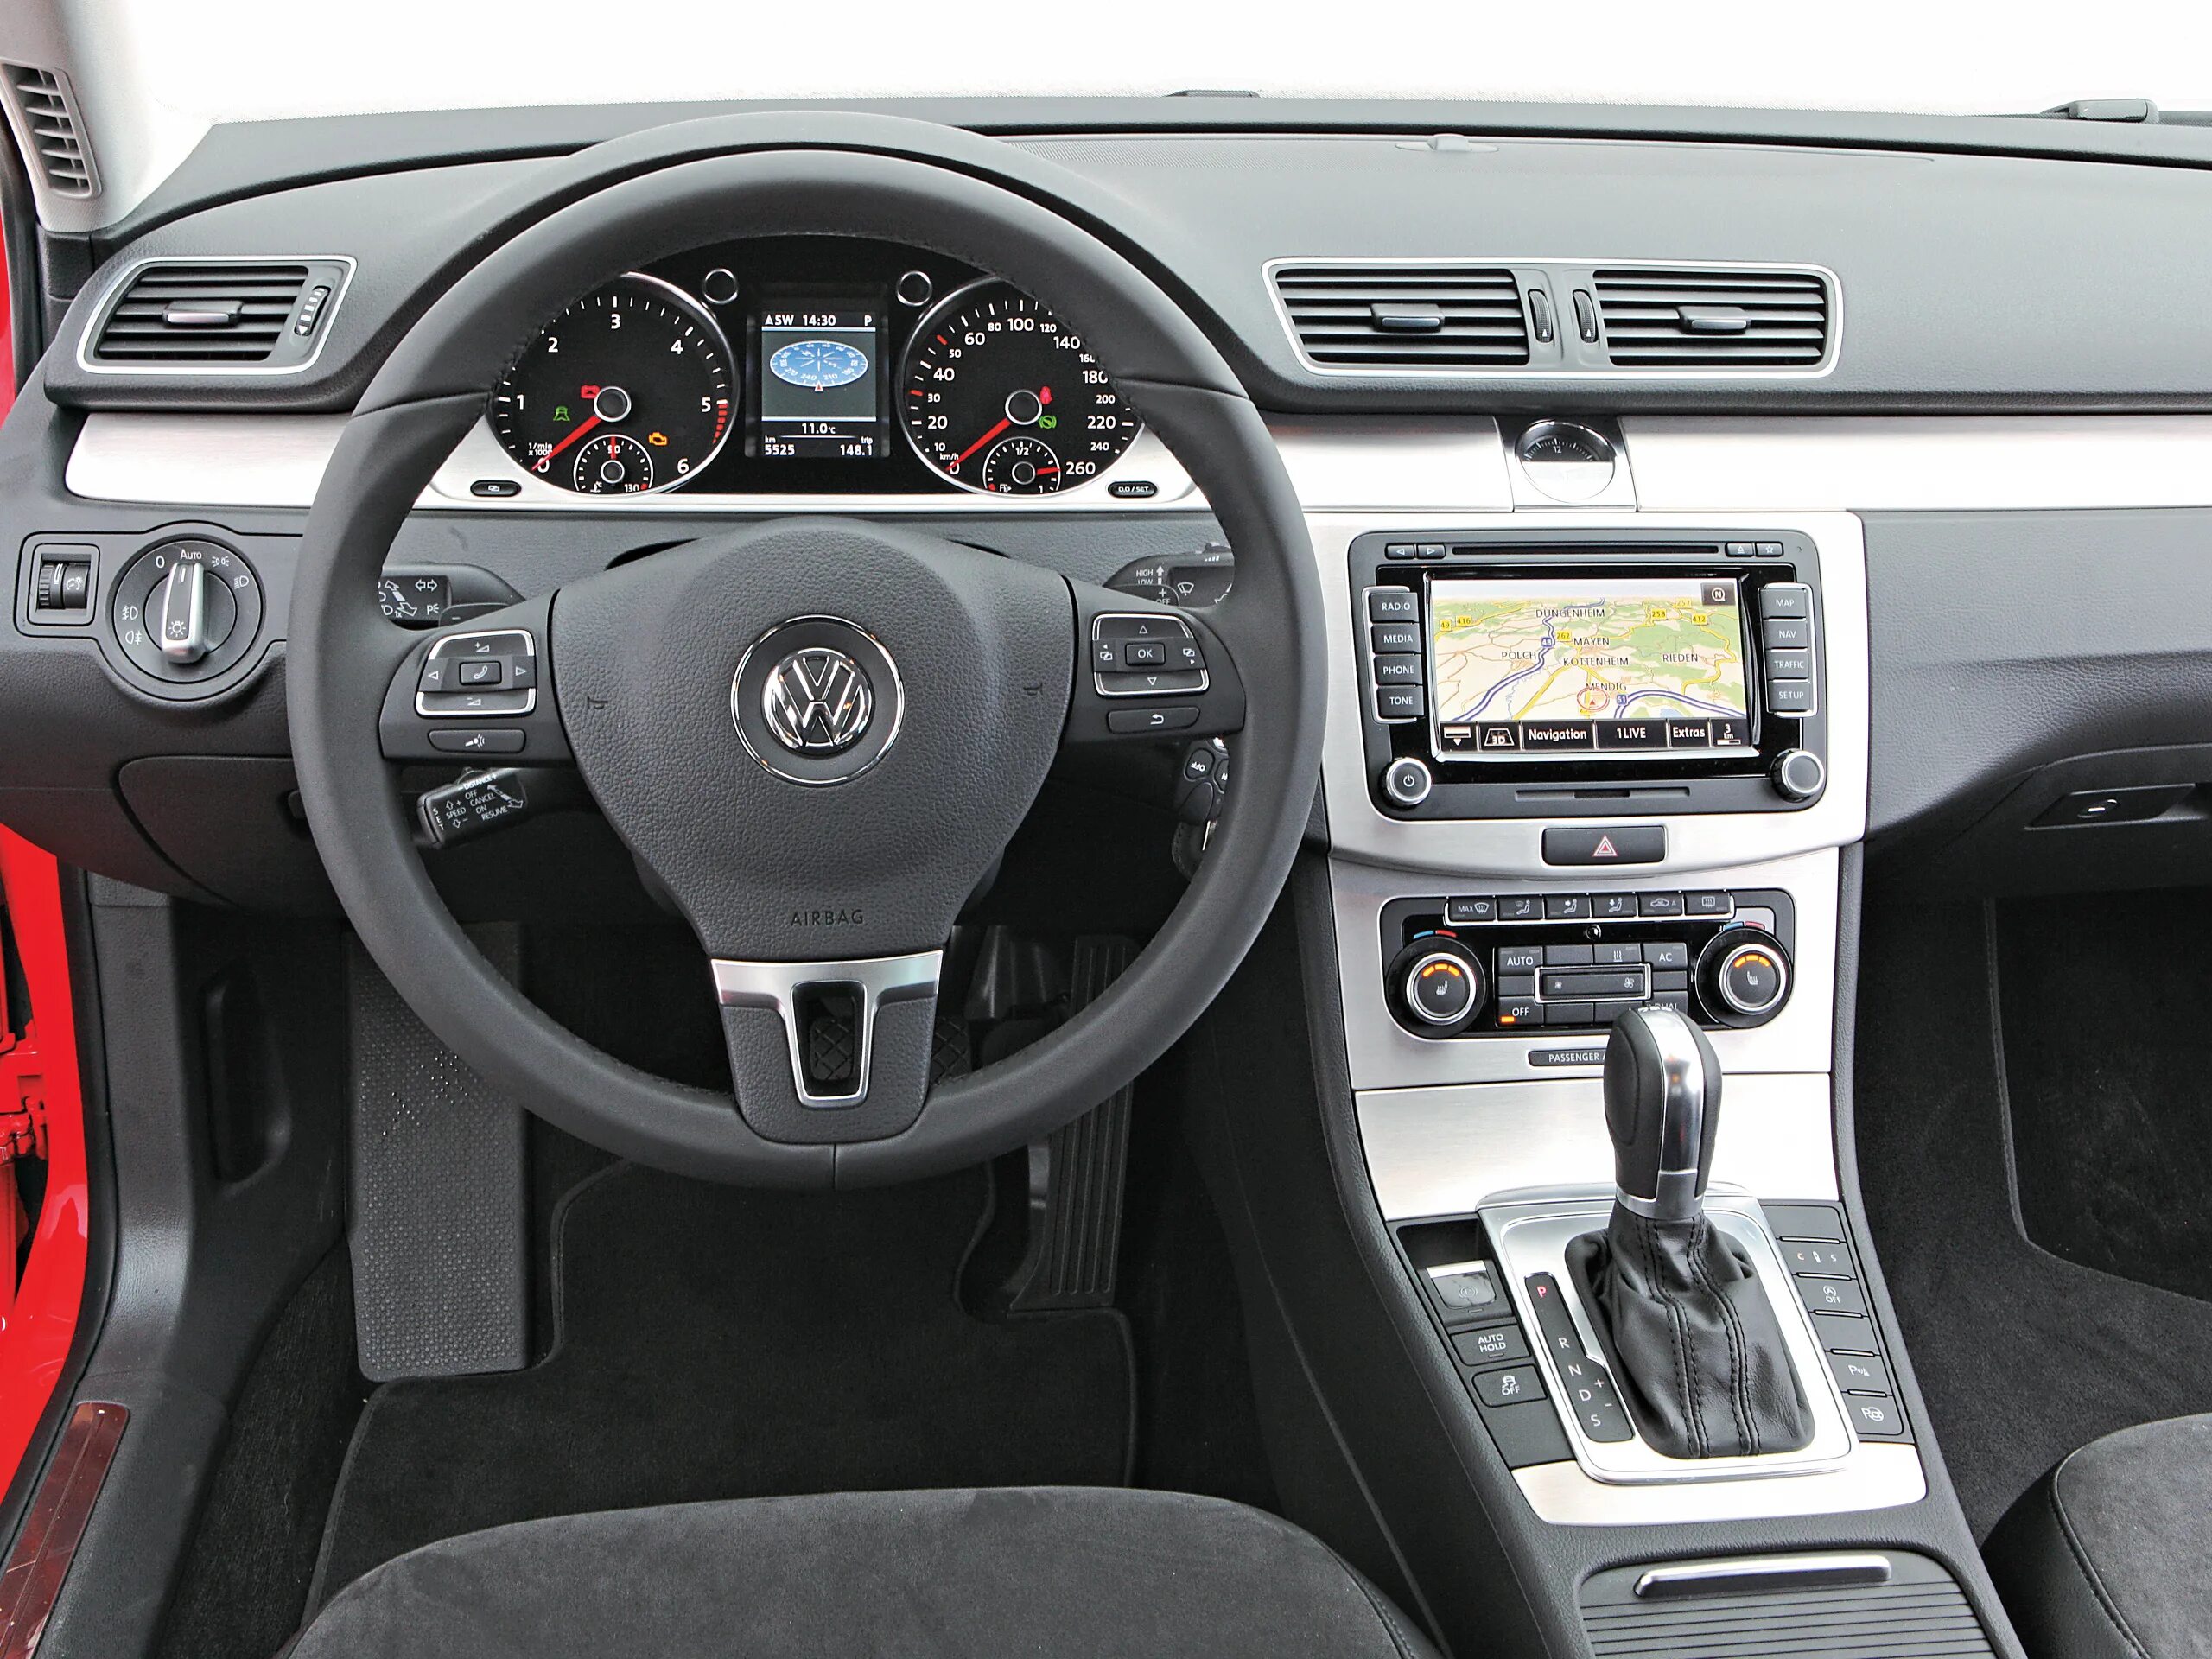 Volkswagen Passat b6 2.0 TDI 2009. Volkswagen Passat b7 TDI. Фольксваген Пассат б6 2.0 салон. Пассат б6 салон. Фольксваген пассат б6 бензин